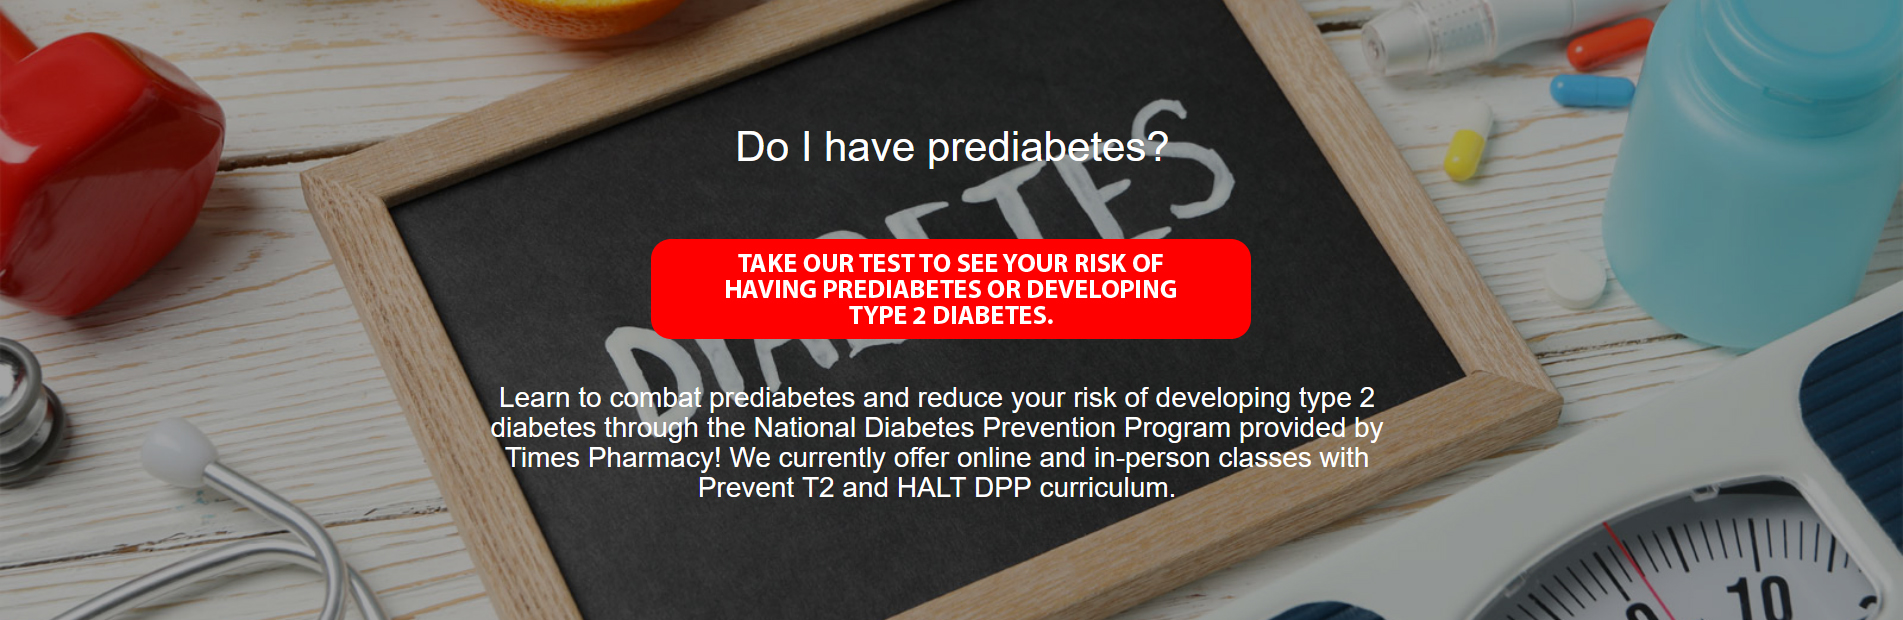 Do I have Prediabetes